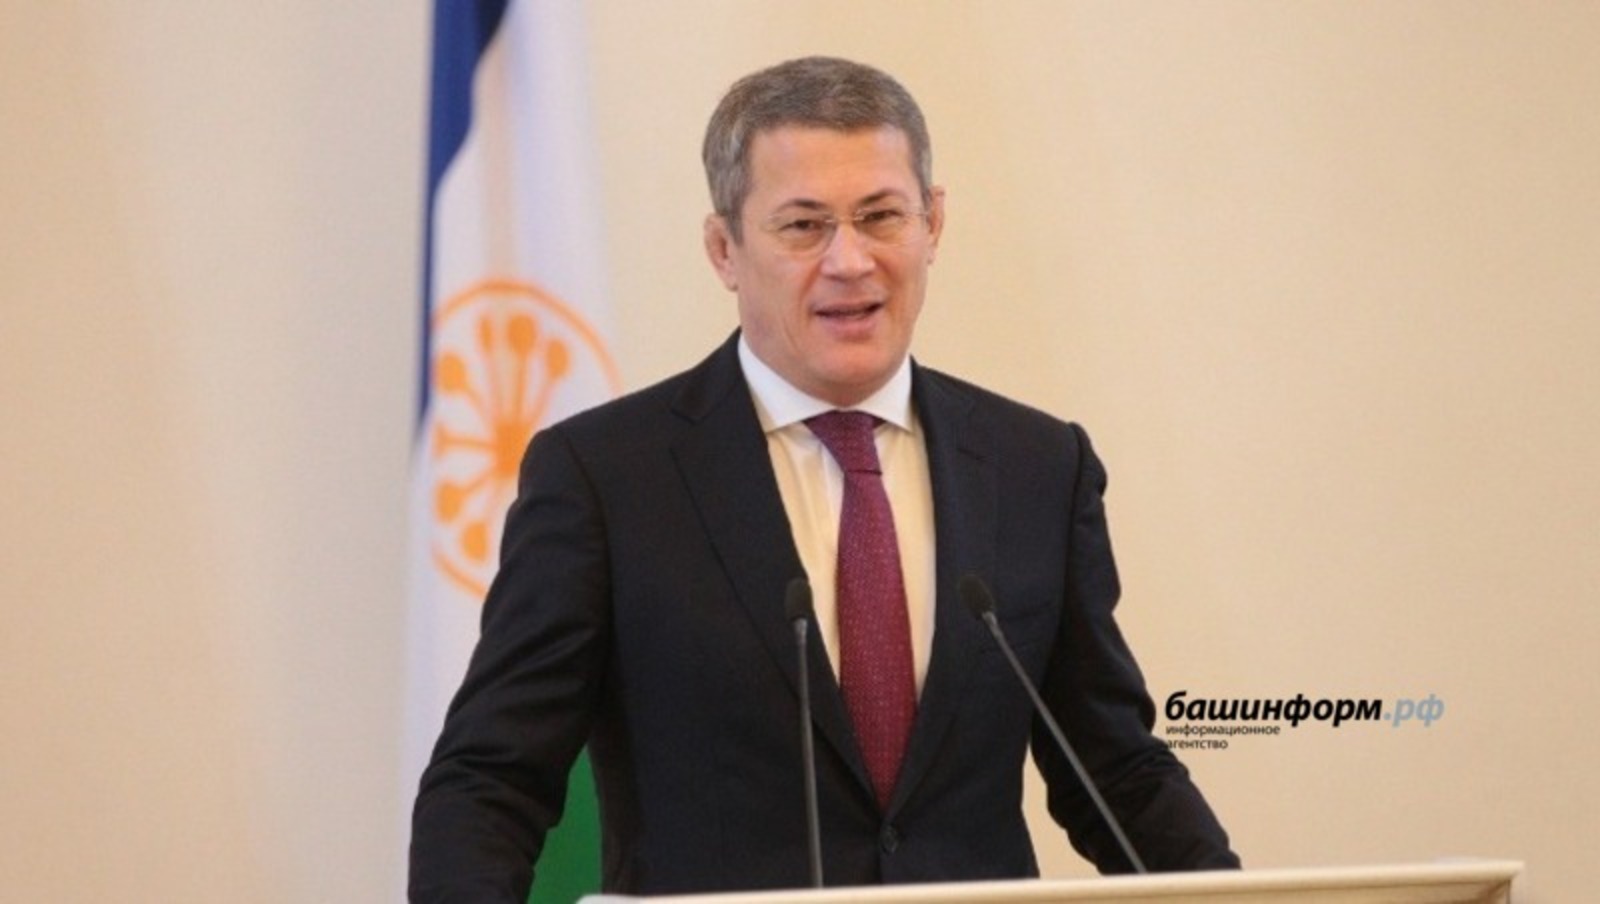 Глава Башкирии занял первое место в рейтинге губернаторов ПФО за апрель 2022 года